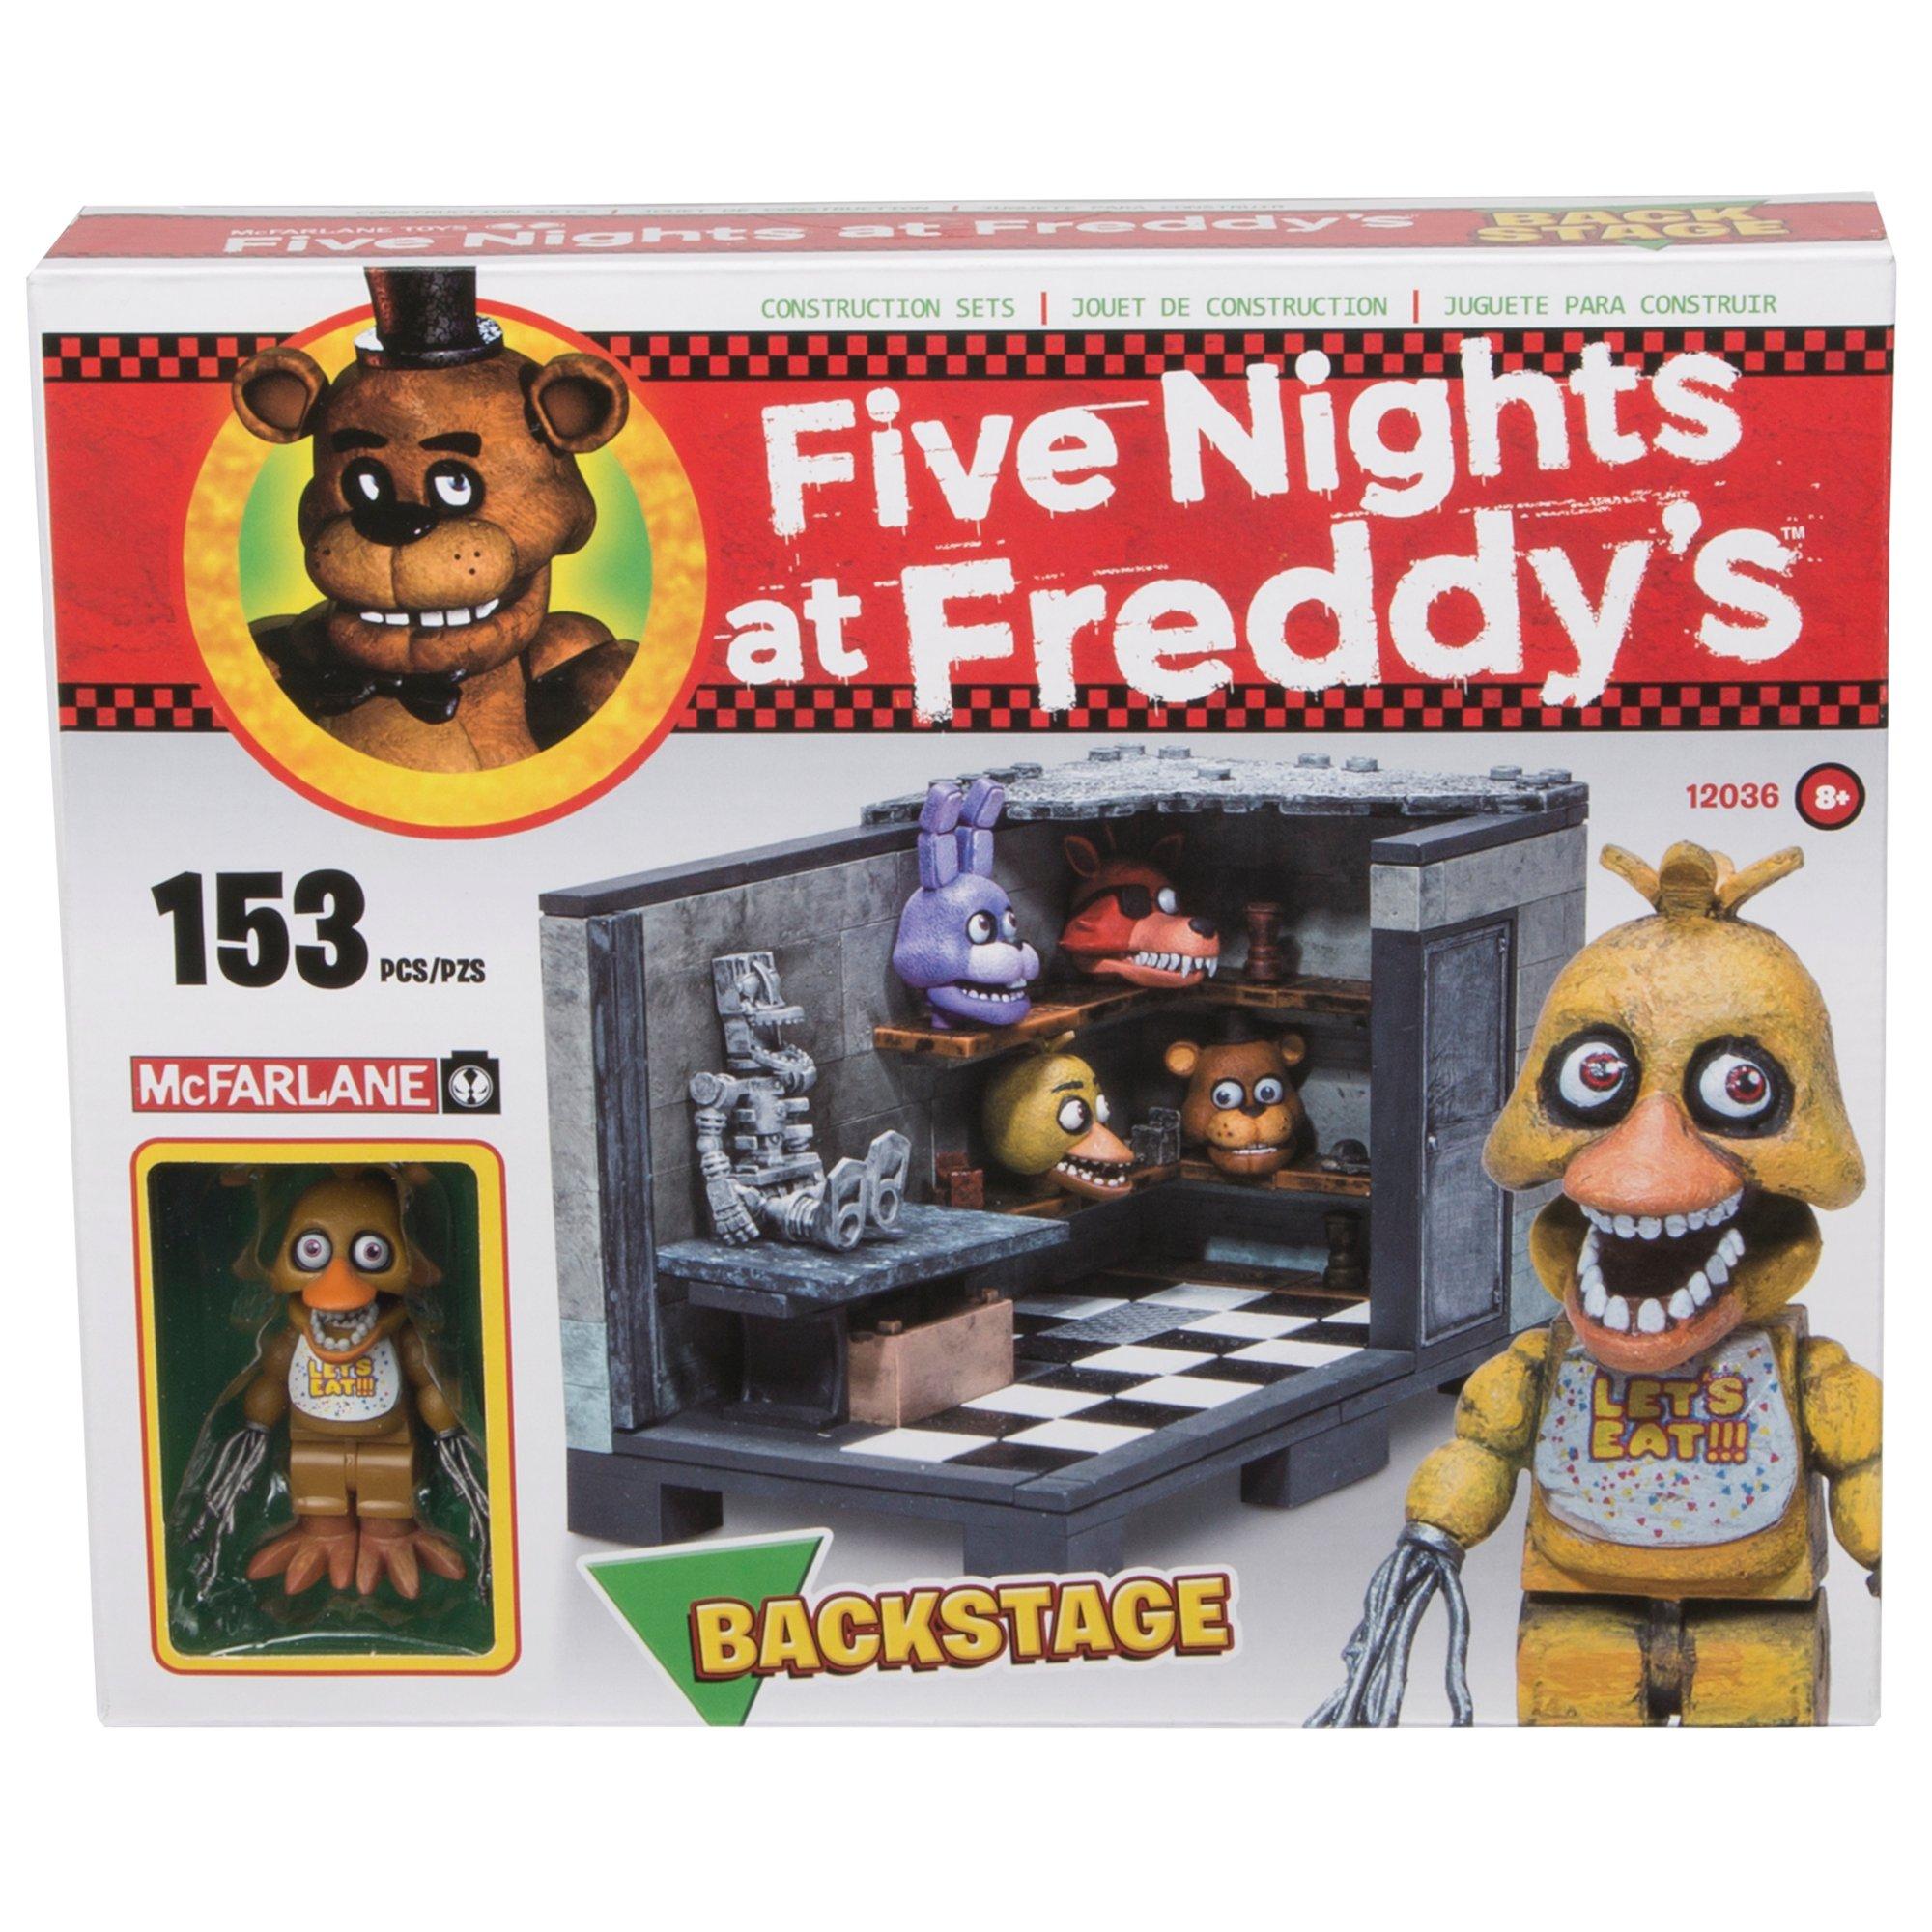 Набор фнаф пиццерия. Конструктор MCFARLANE Toys Five Nights at Freddy's Toy. Конструктор MCFARLANE Toys Five Nights at Freddy's. Лего 5 ночей с Фредди наборы пиццерии. Игрушки игрушки АНИМАТРОНИКИ лего Фредди фазбер.